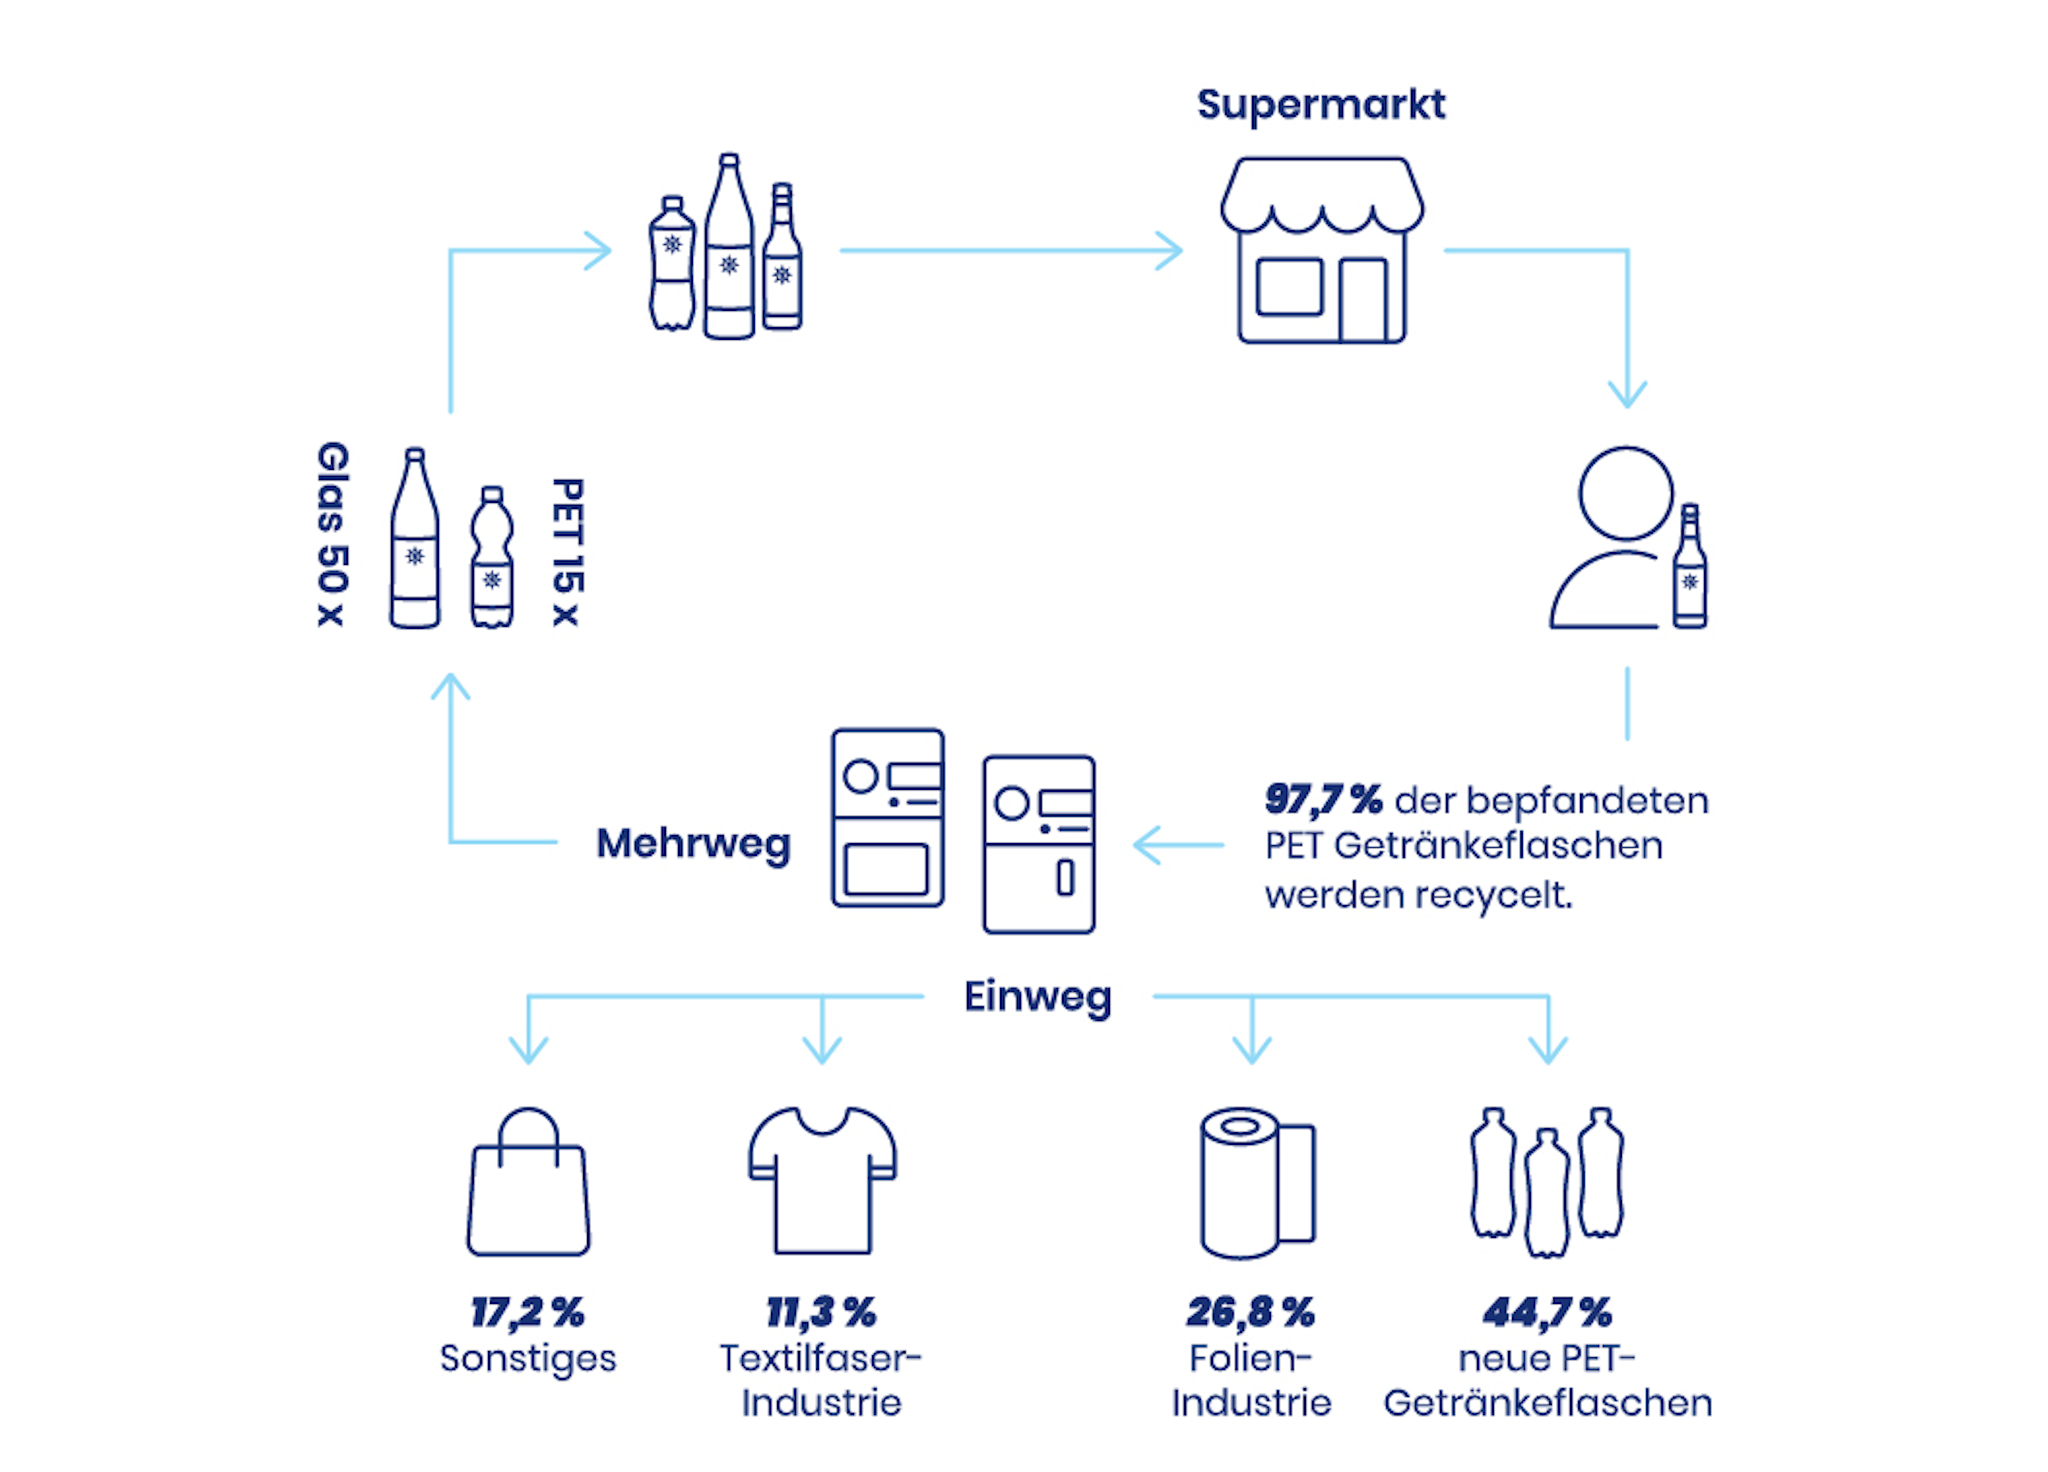 Eine Infografik die den PET-Kreislauf für Mehrweg und Einweg zeigt, sowie die Verwertung der Flaschen